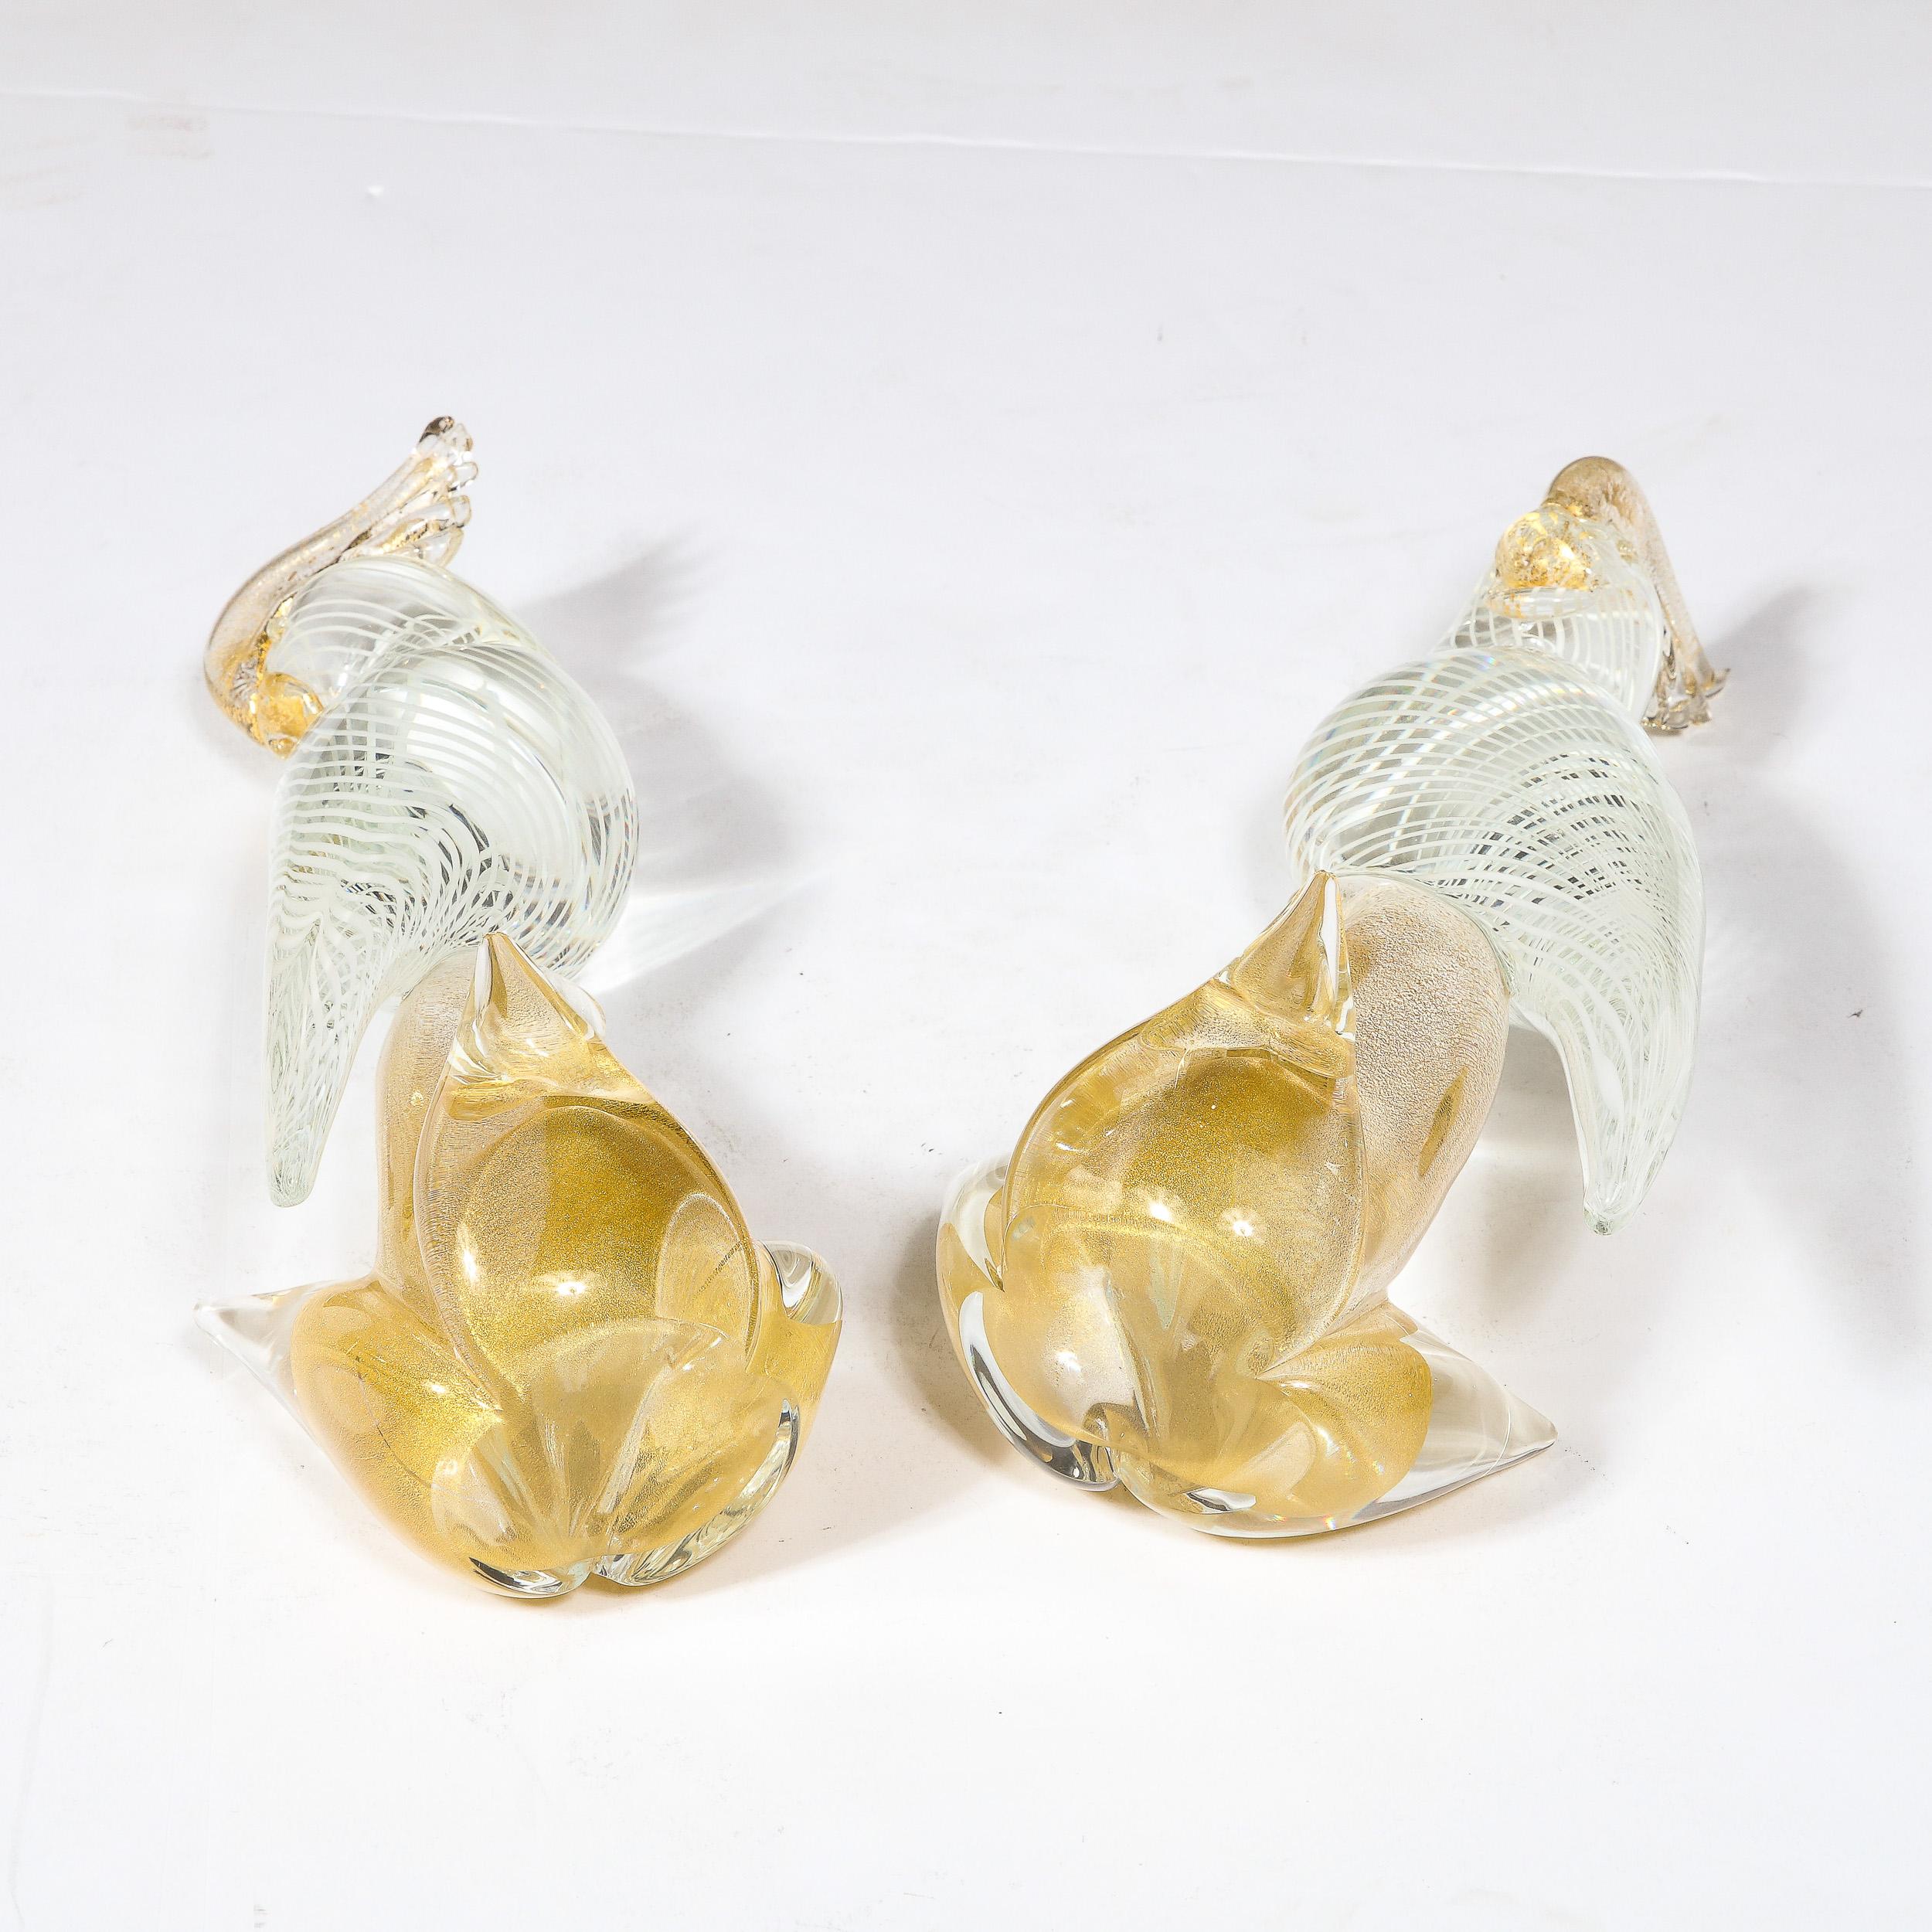 Hand-Blown Murano Glass Cockatiels w/ Filigree Details and 24 Karat Gold Flecks 10